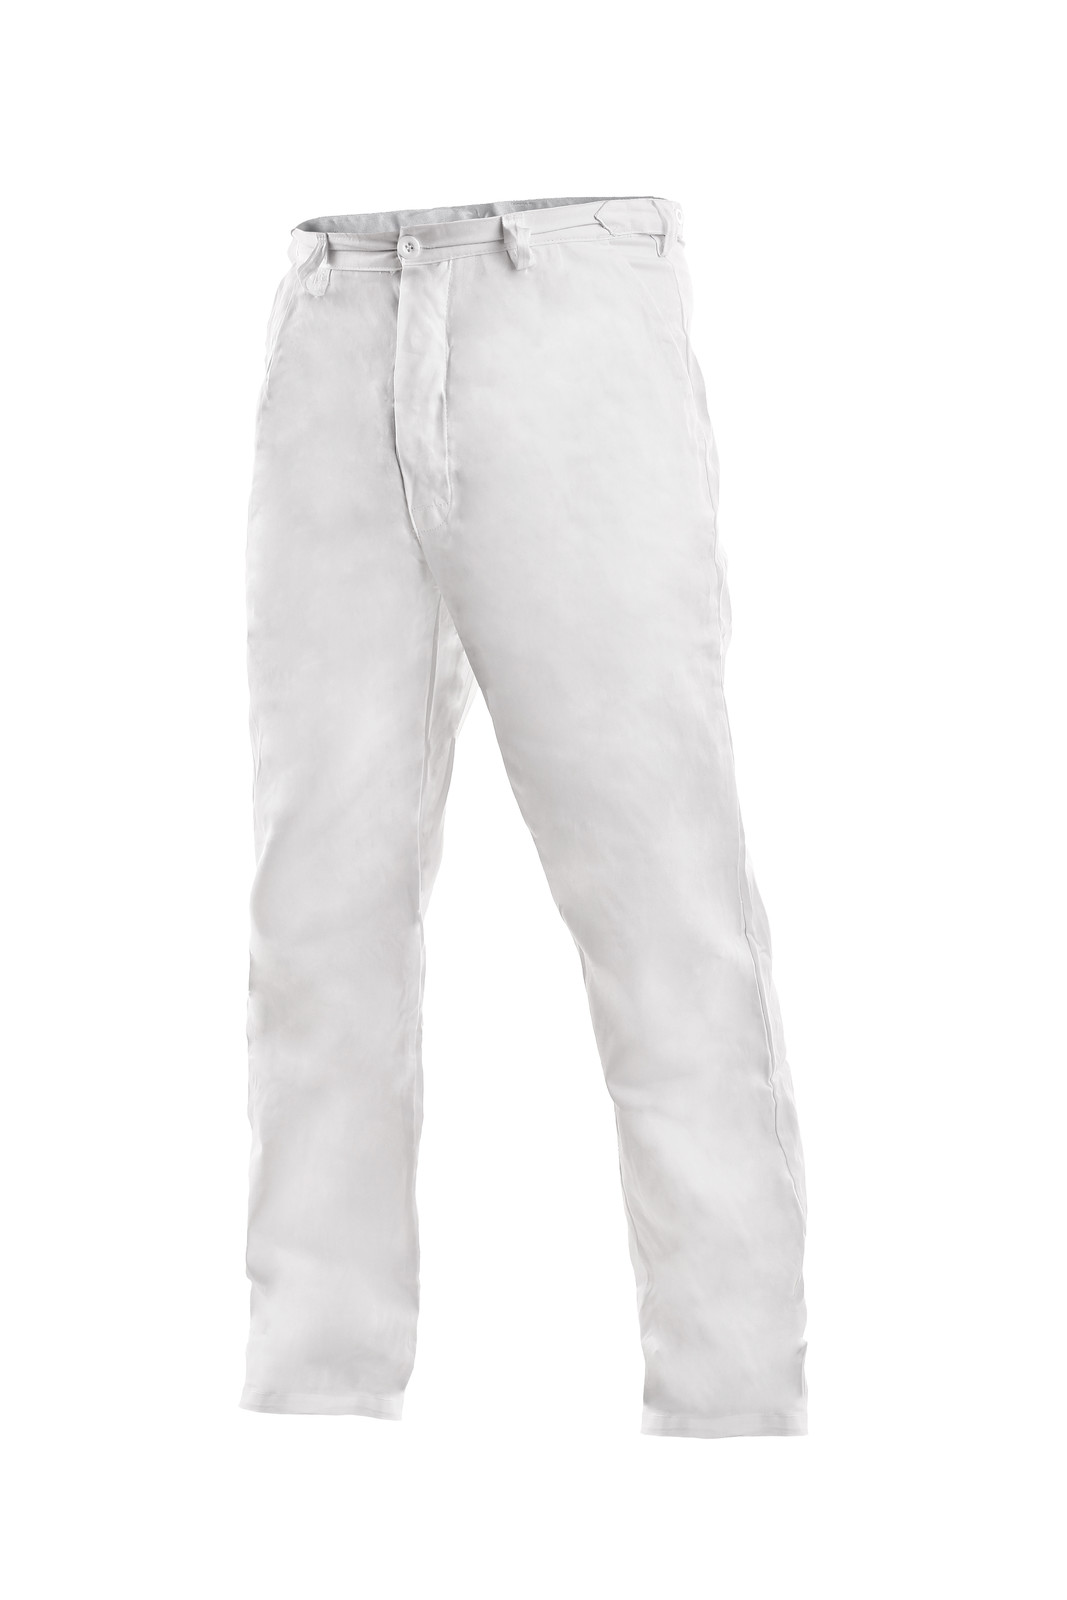 Pánske biele bavlnené nohavice Artur - veľkosť: 46, farba: biela